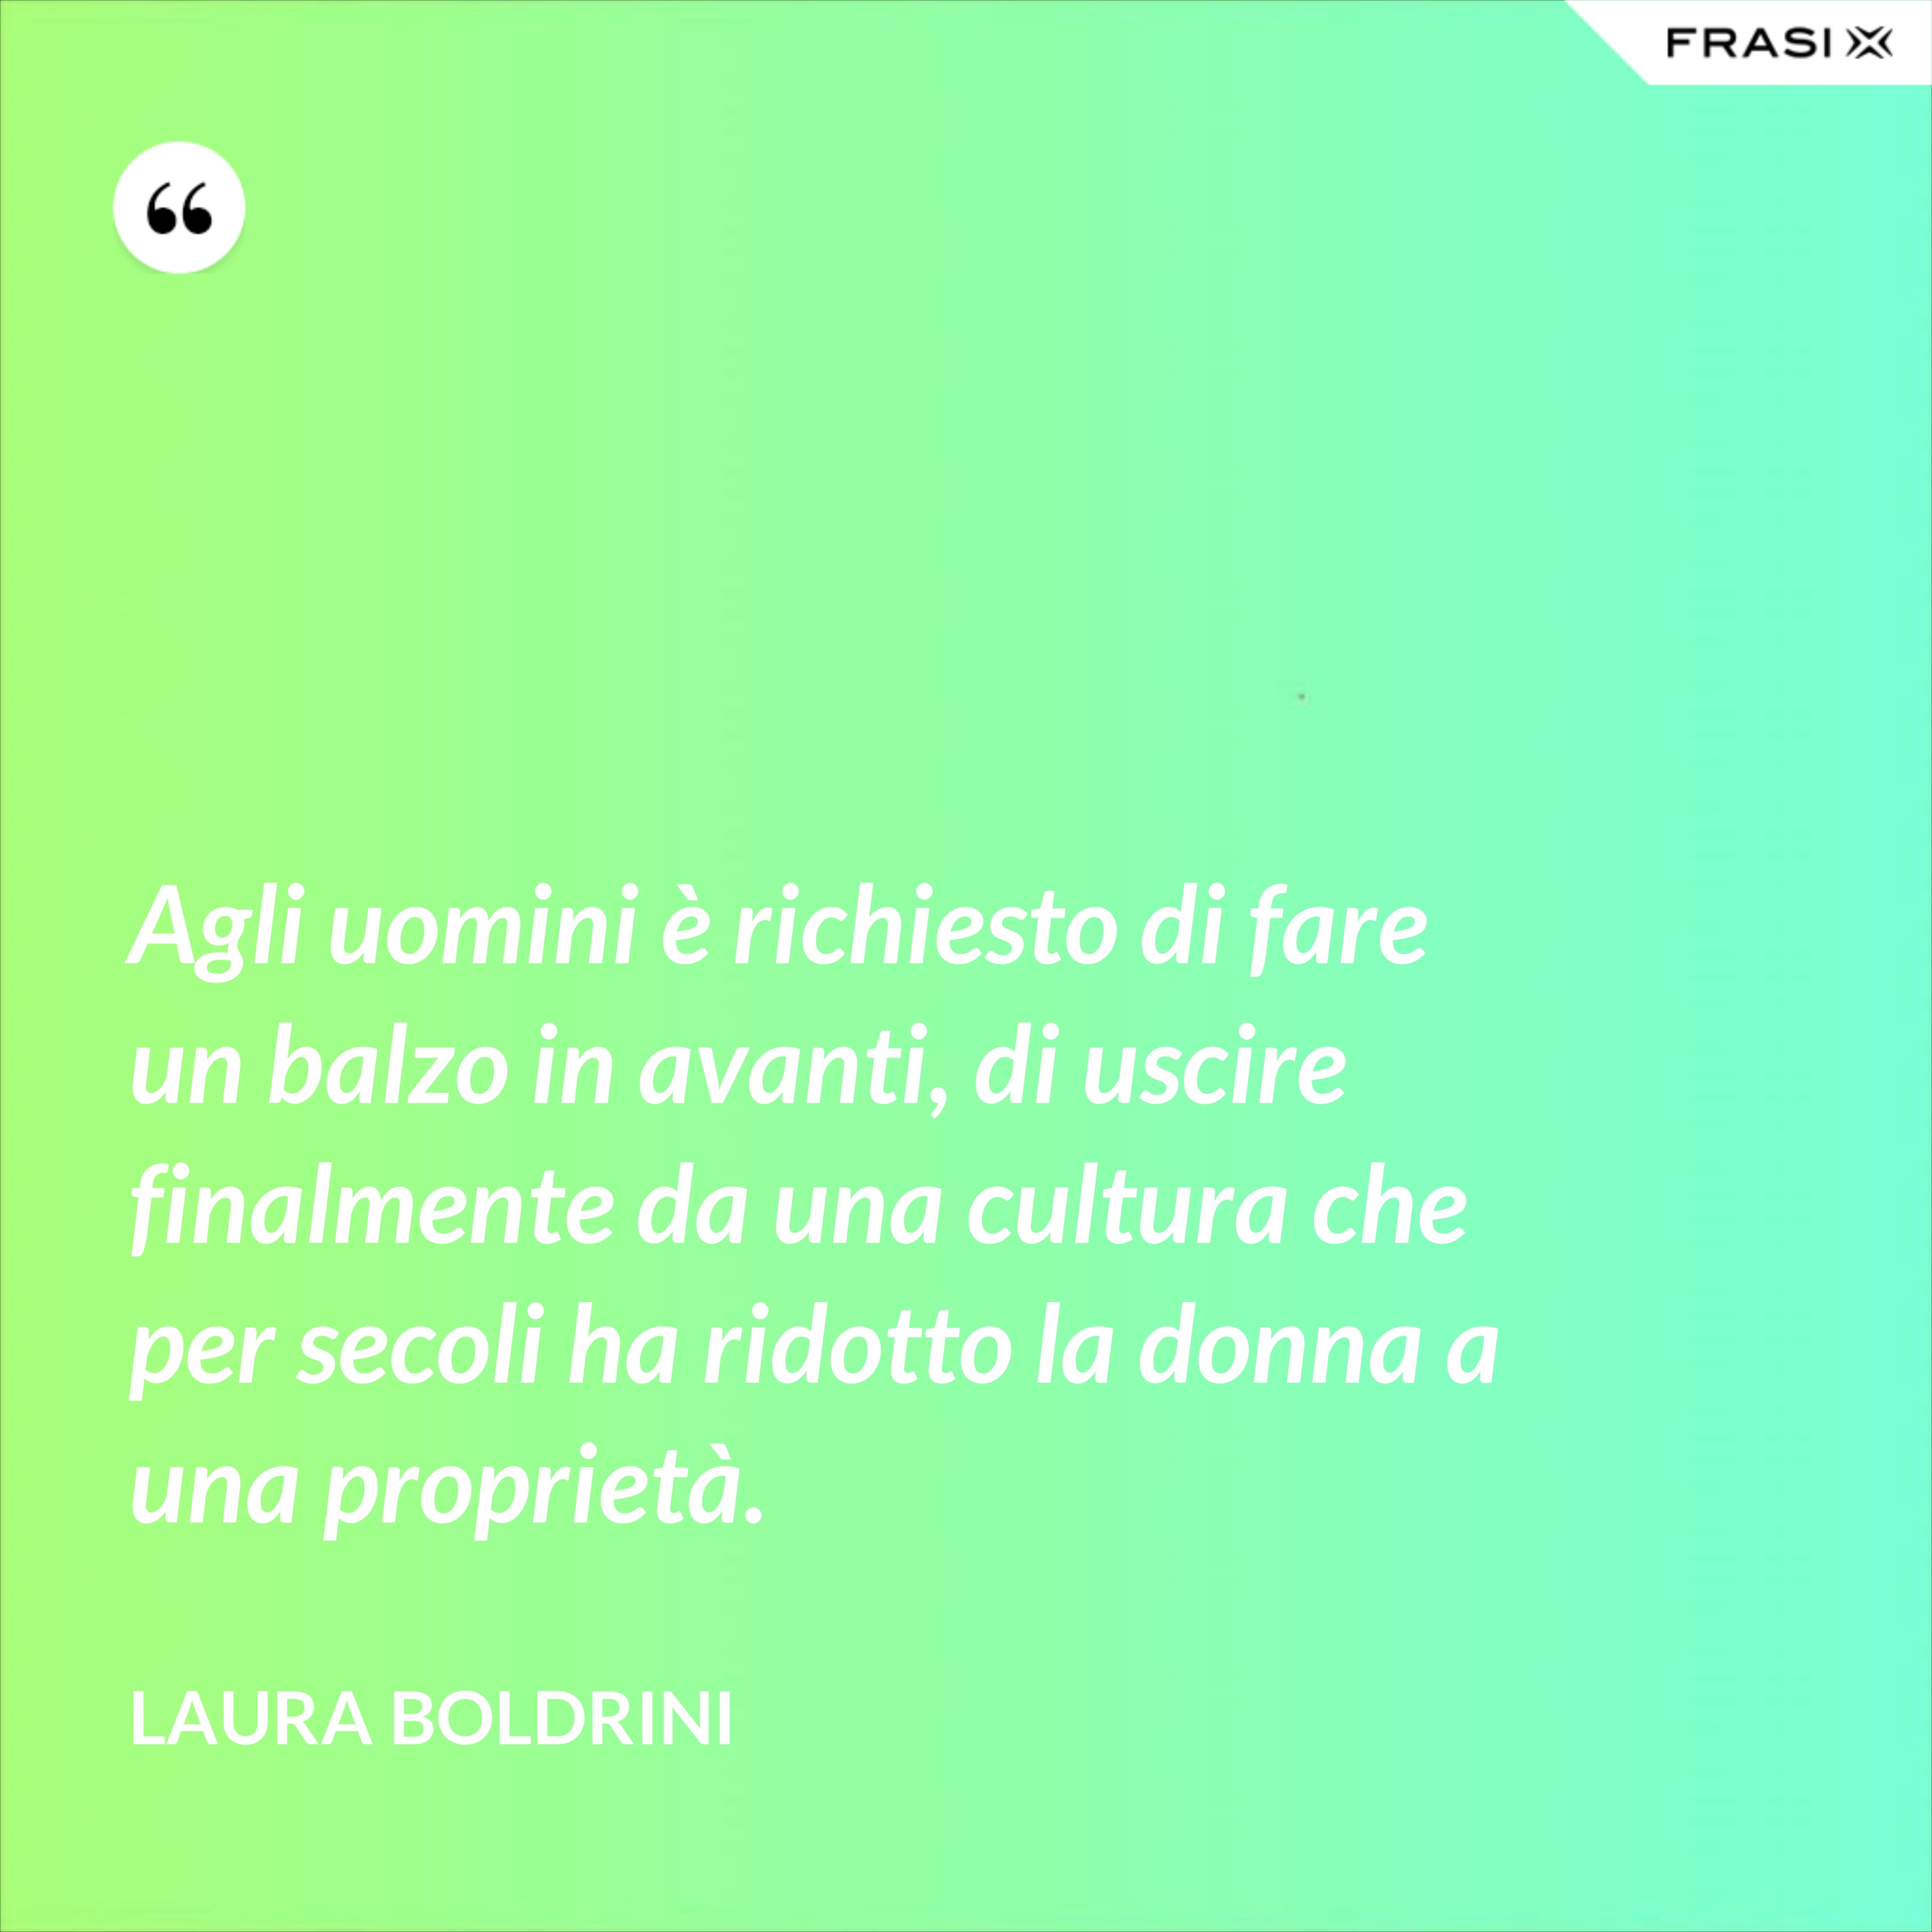 Agli uomini è richiesto di fare un balzo in avanti, di uscire finalmente da una cultura che per secoli ha ridotto la donna a una proprietà. - Laura Boldrini